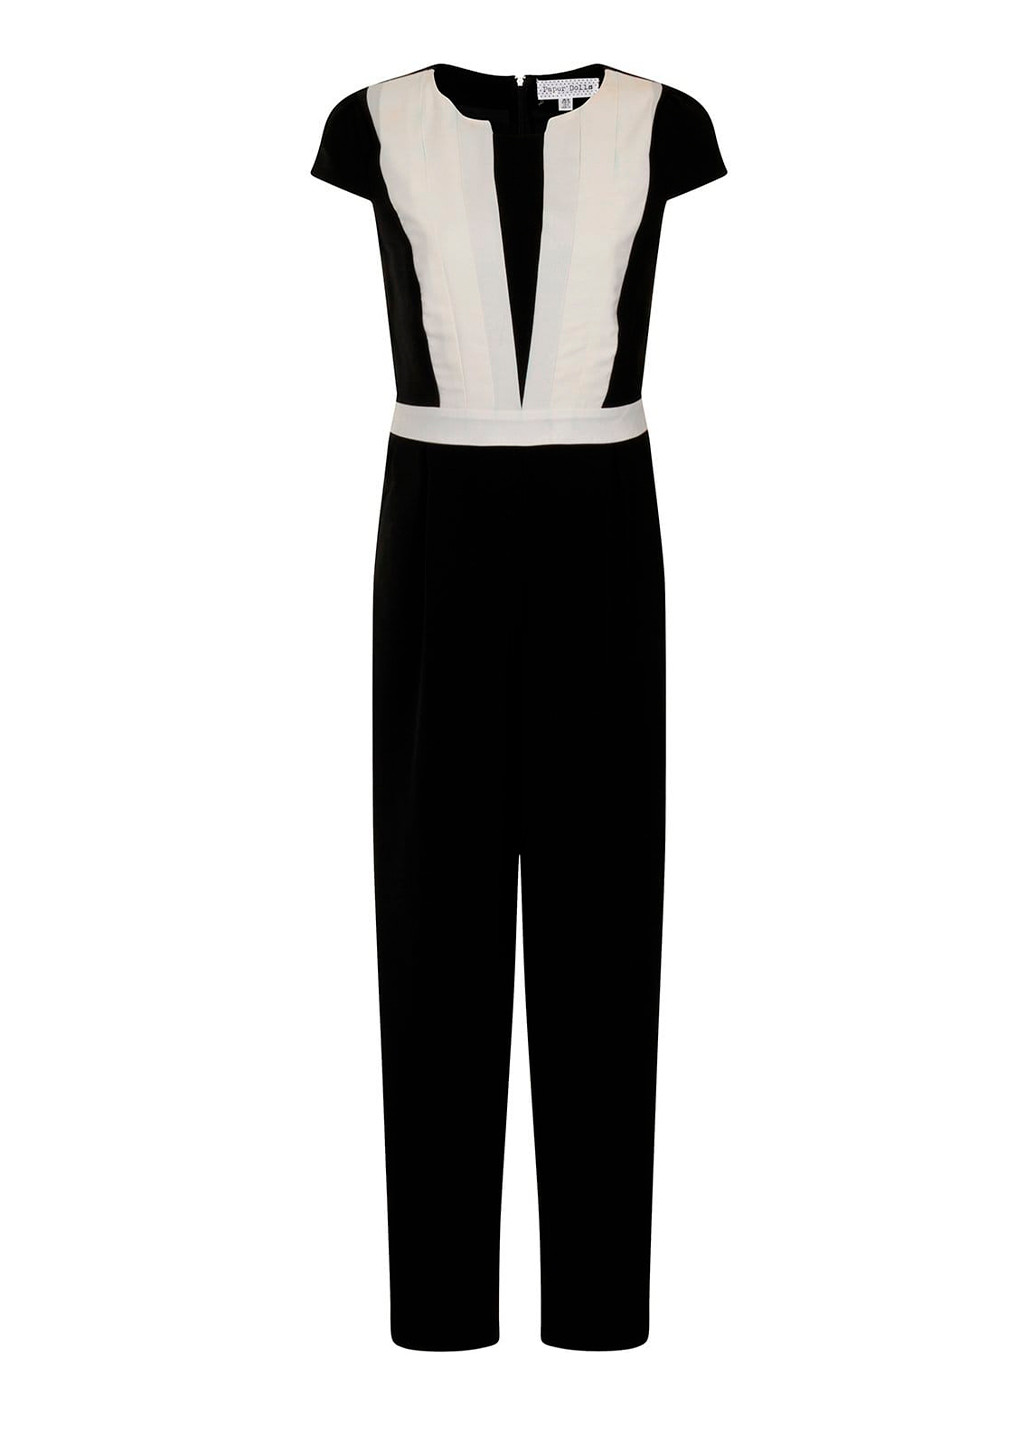 Женский комбинезон брюками Paper Dolls комбинезон-брюки однотонный чёрный праздничный полиэстер